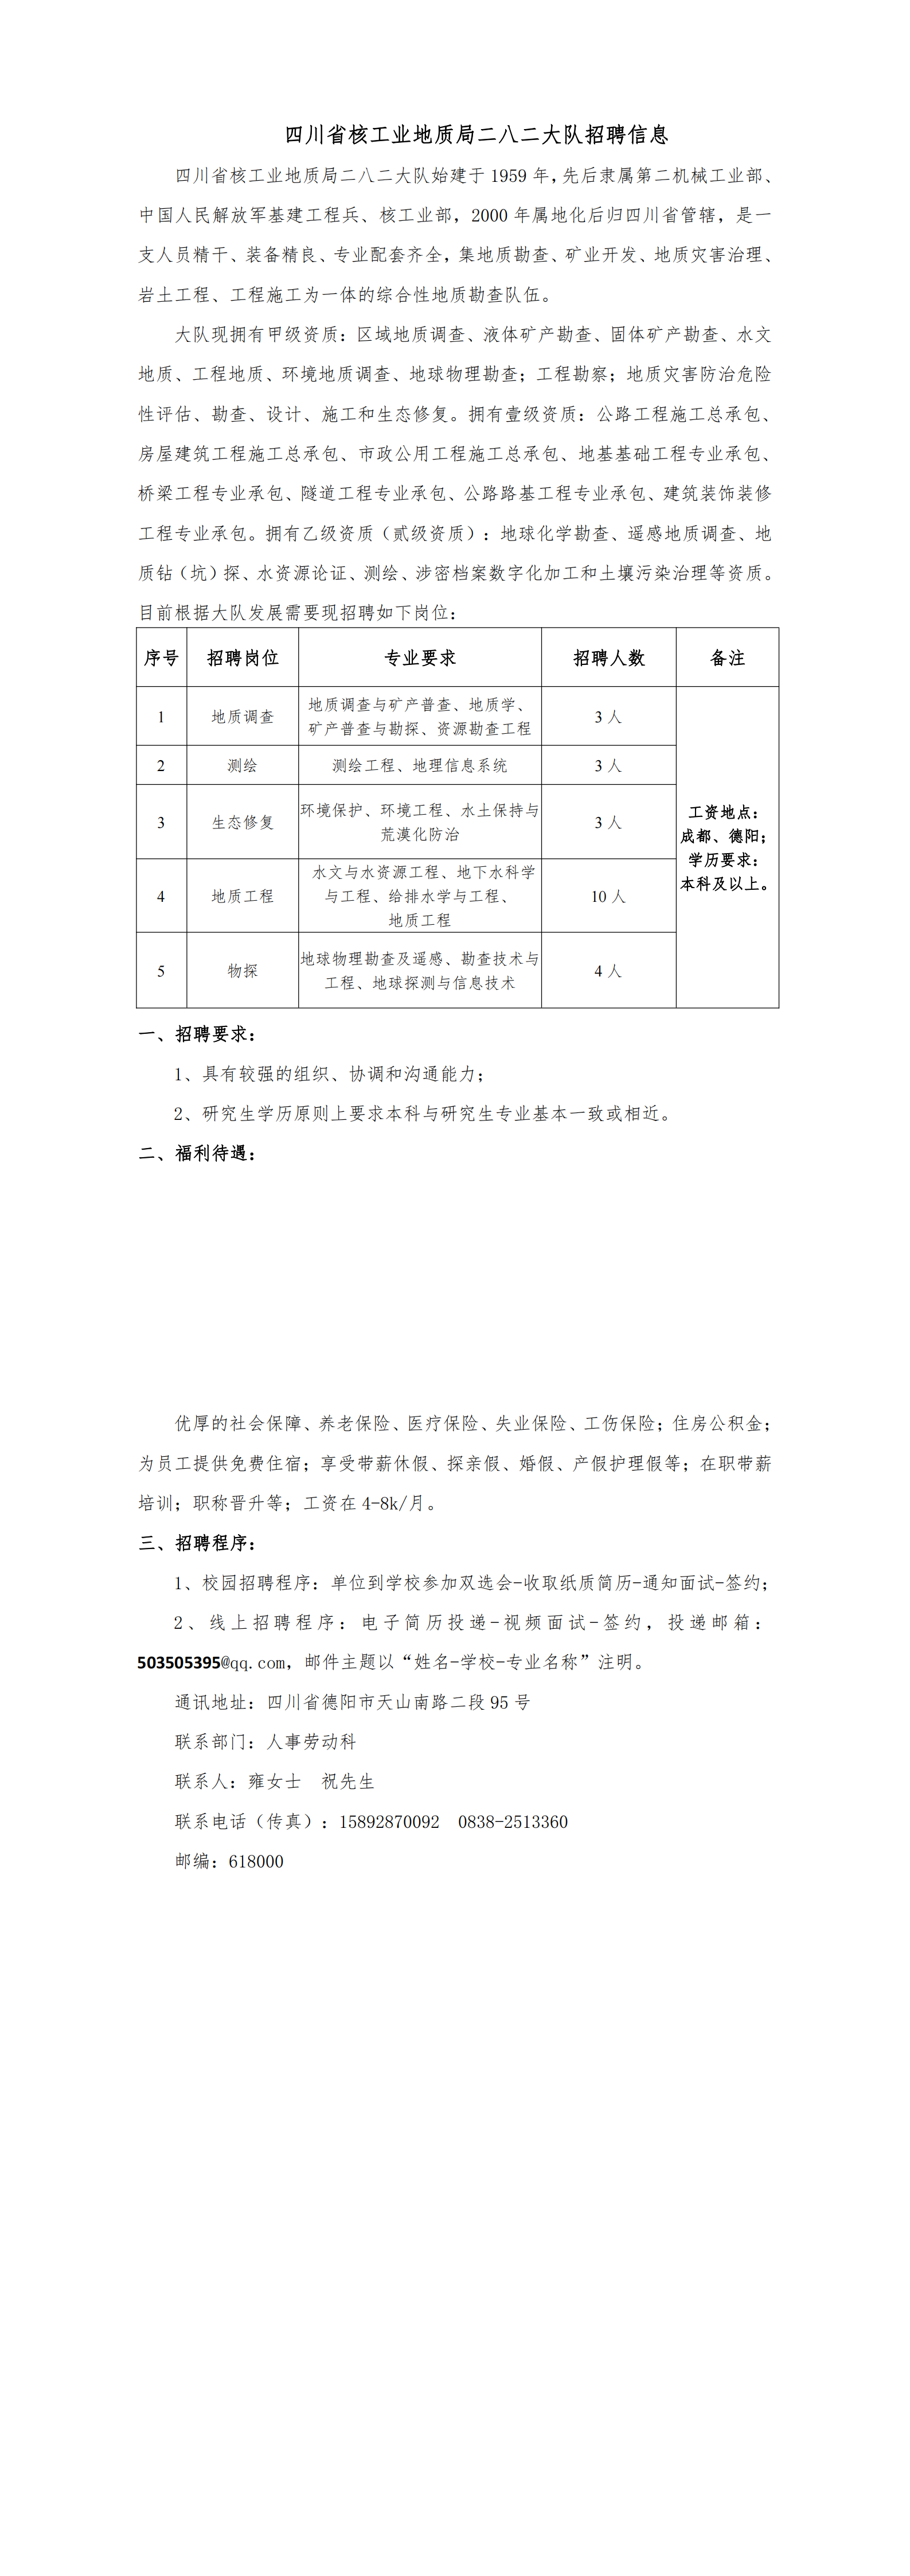 四川省核工业地质局二八二大队招聘信息_00.png